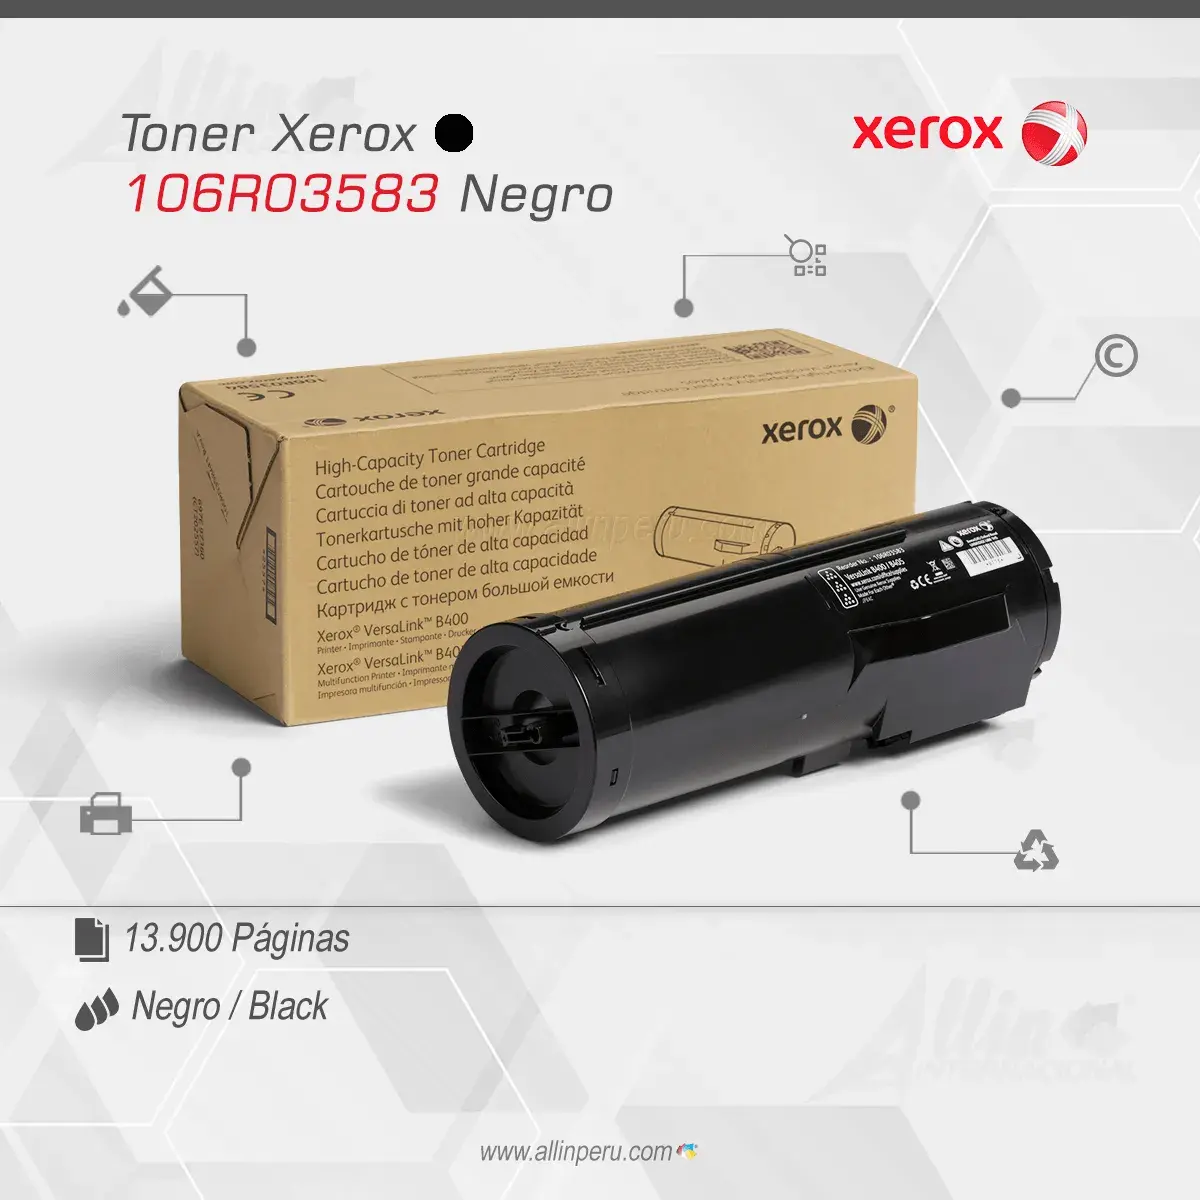 Tóner Xerox 106R03583 este cartucho está hecho para impresoras VersaLink B400